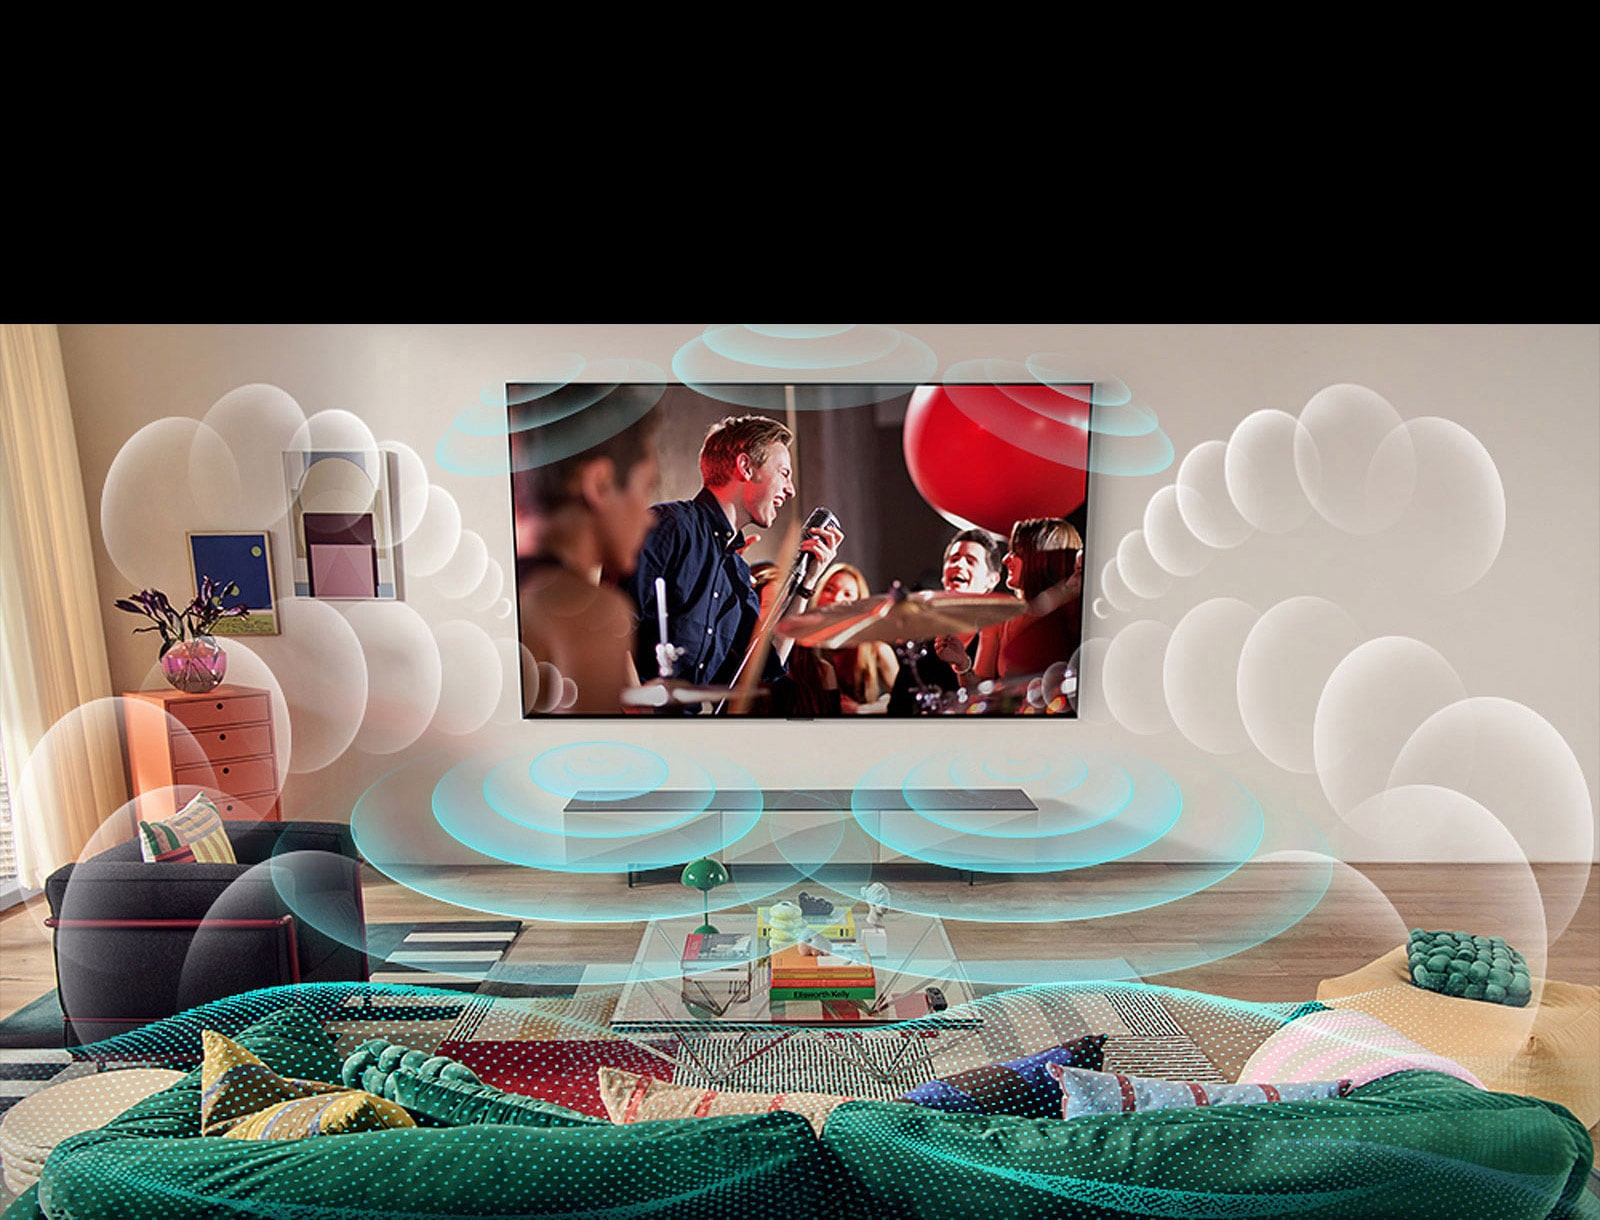 Immagine di un TV LG OLED in una stanza in cui viene mostrato un concerto musicale.  Bolle raffiguranti il ​​suono surround virtuale che riempiono lo spazio.